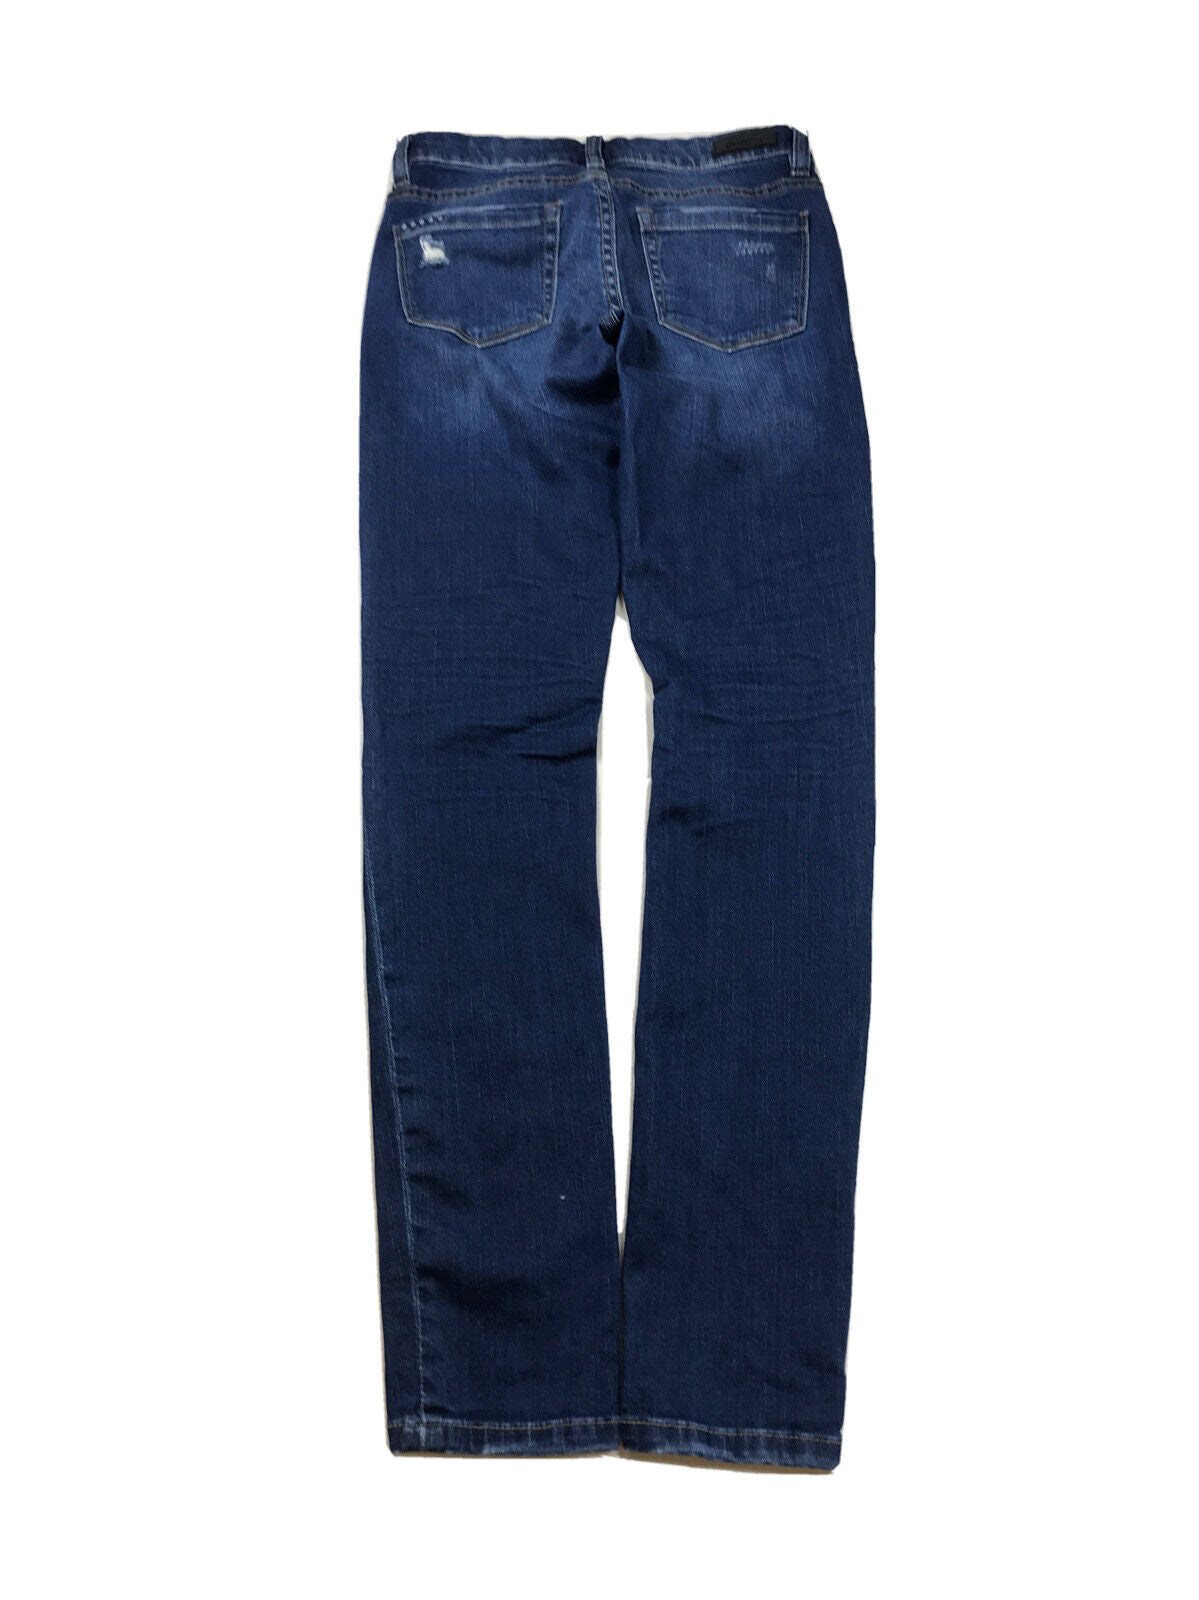 BlankNYC Women's Dark Wash Distressed Skinny Stretch Jeans - 25